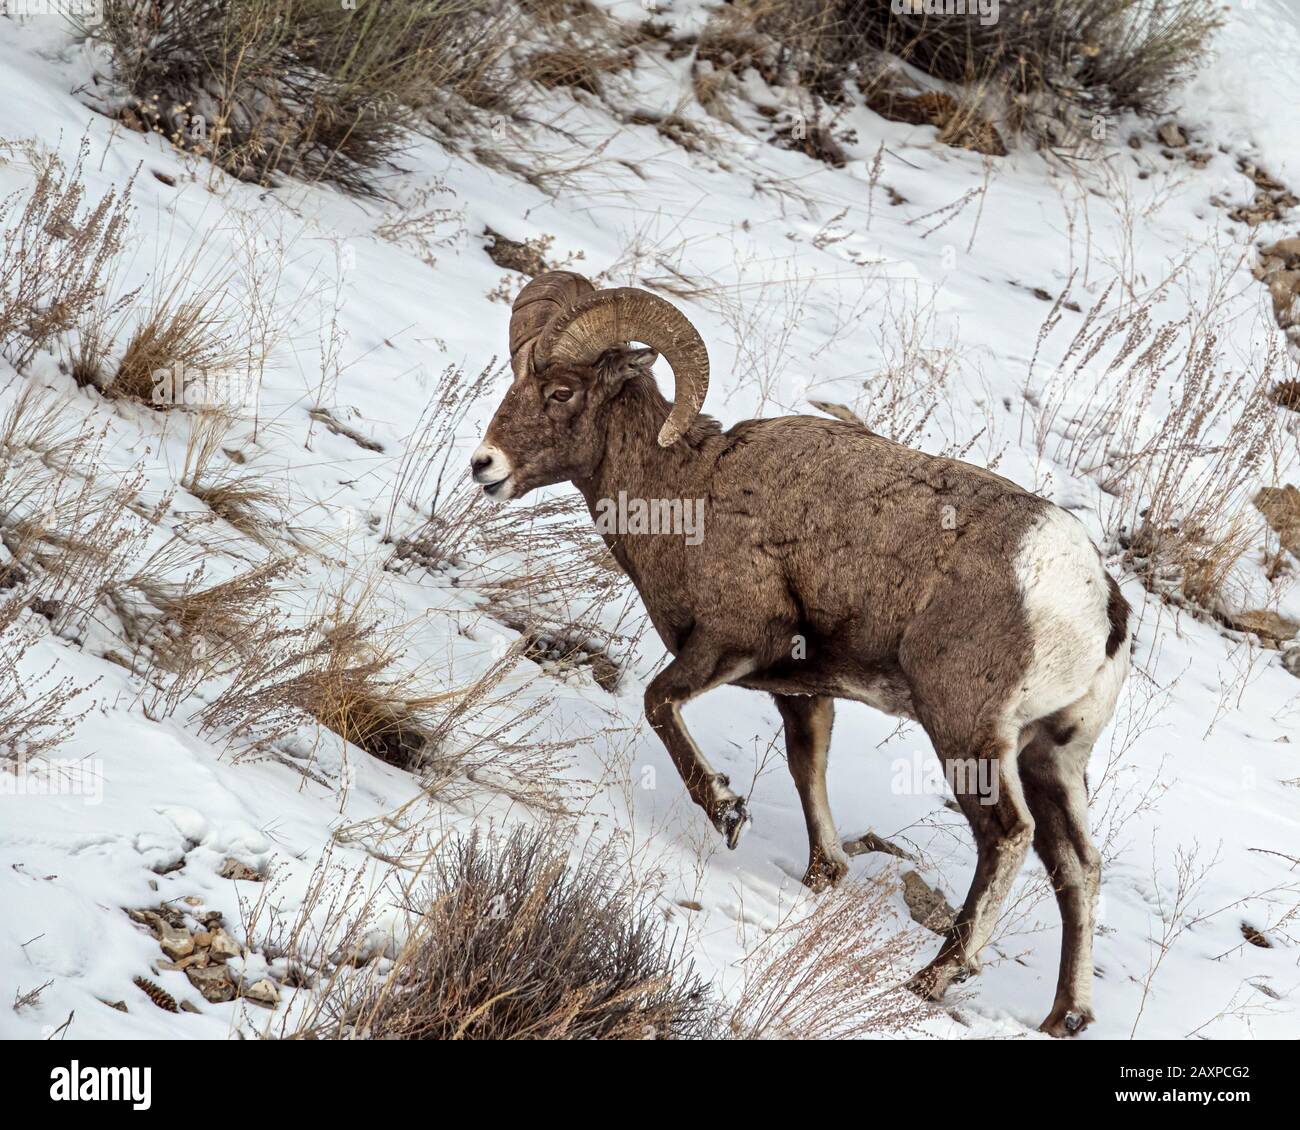 Les moutons Bighorn trouvent un moyen de survivre dans les températures hivernales glaciales du parc national Yellowstone Banque D'Images